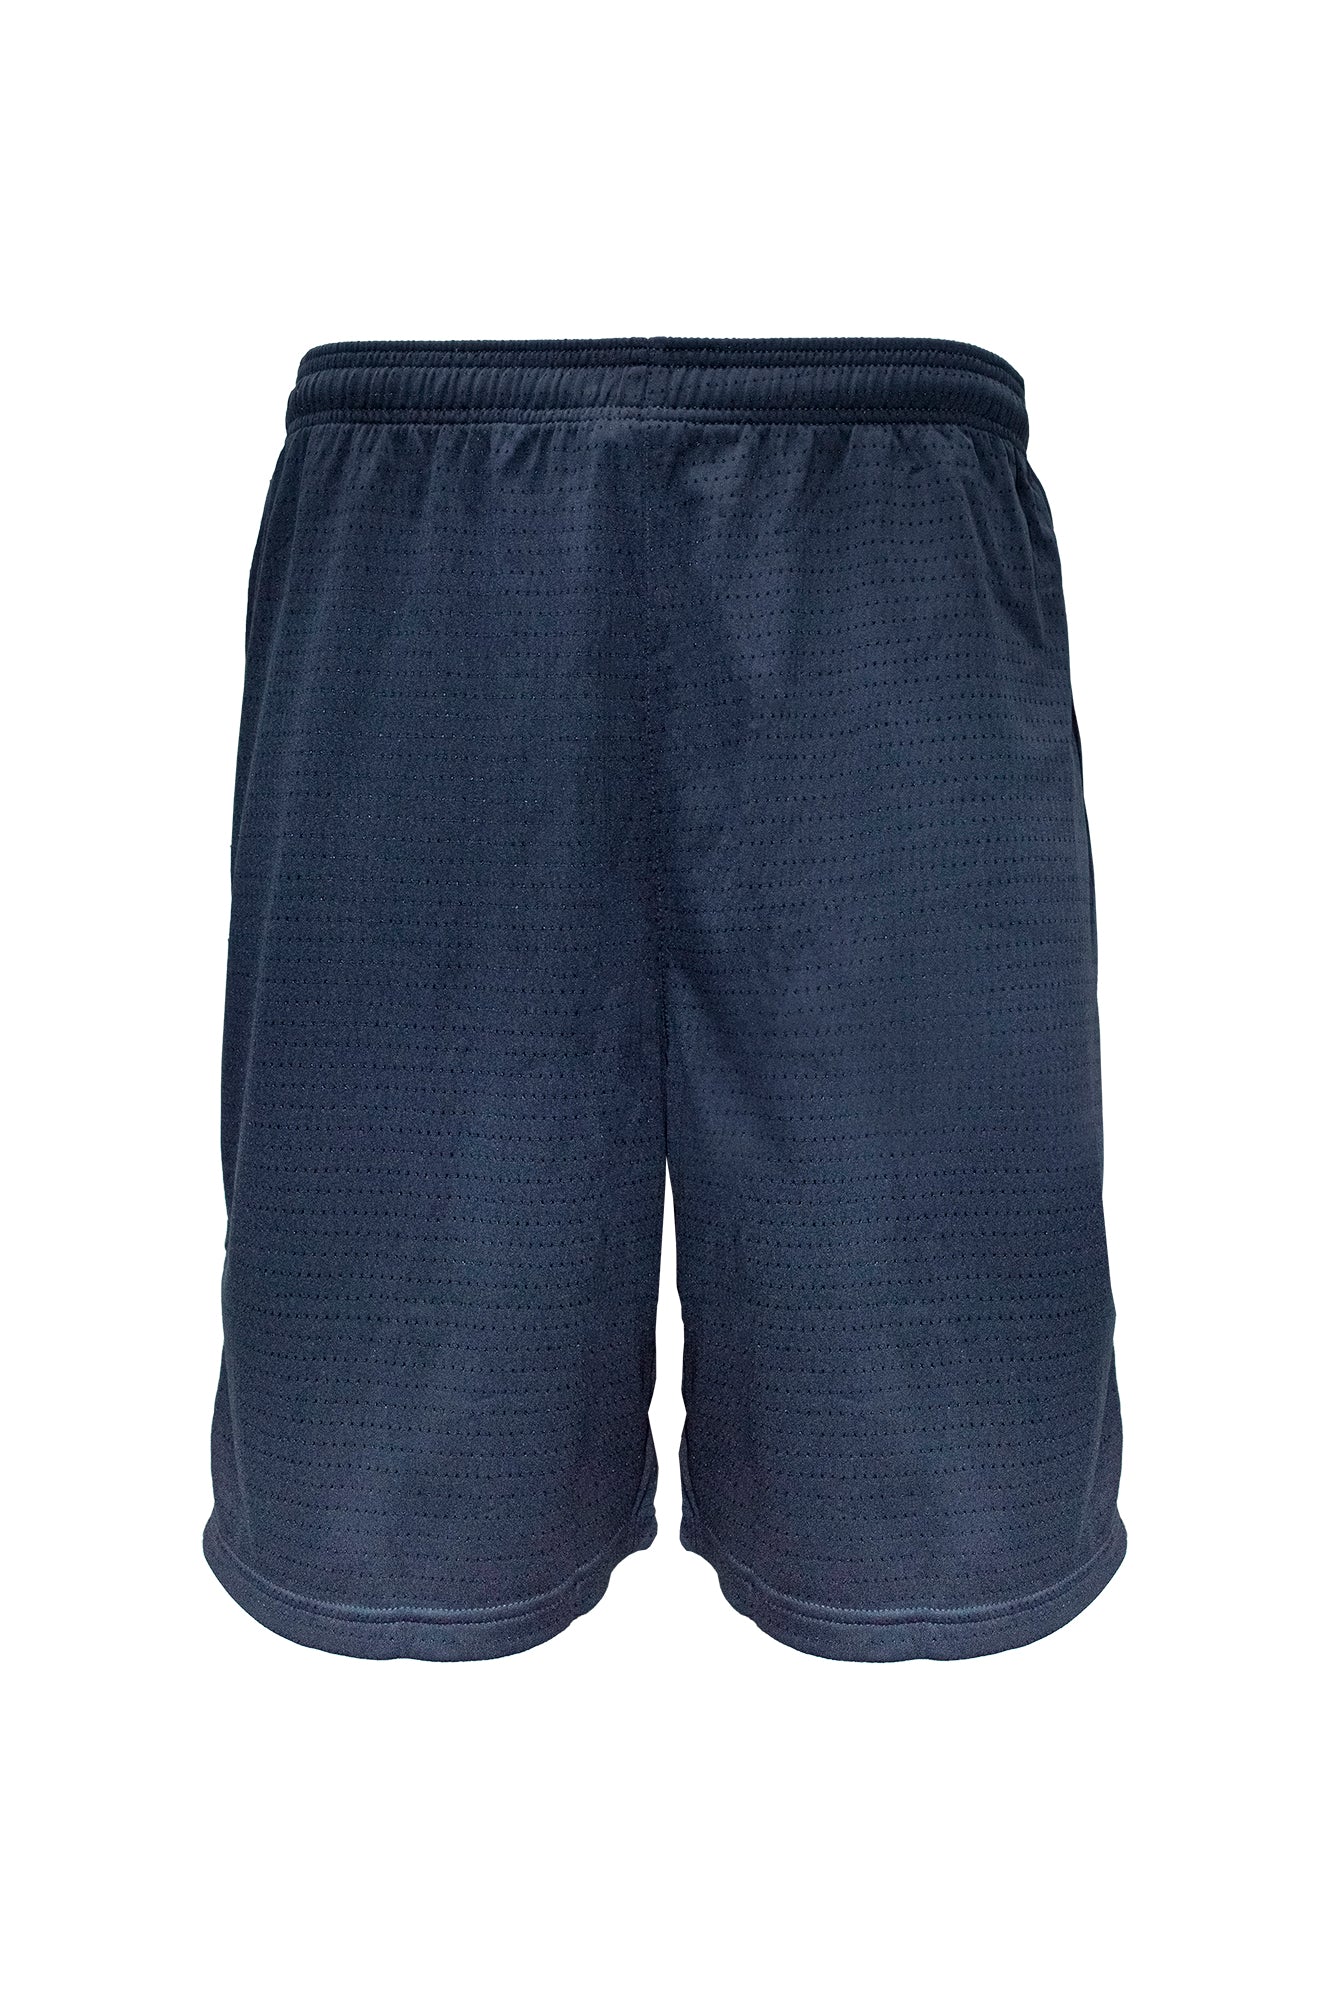 Swish Mens Basketball Shorts - Navy